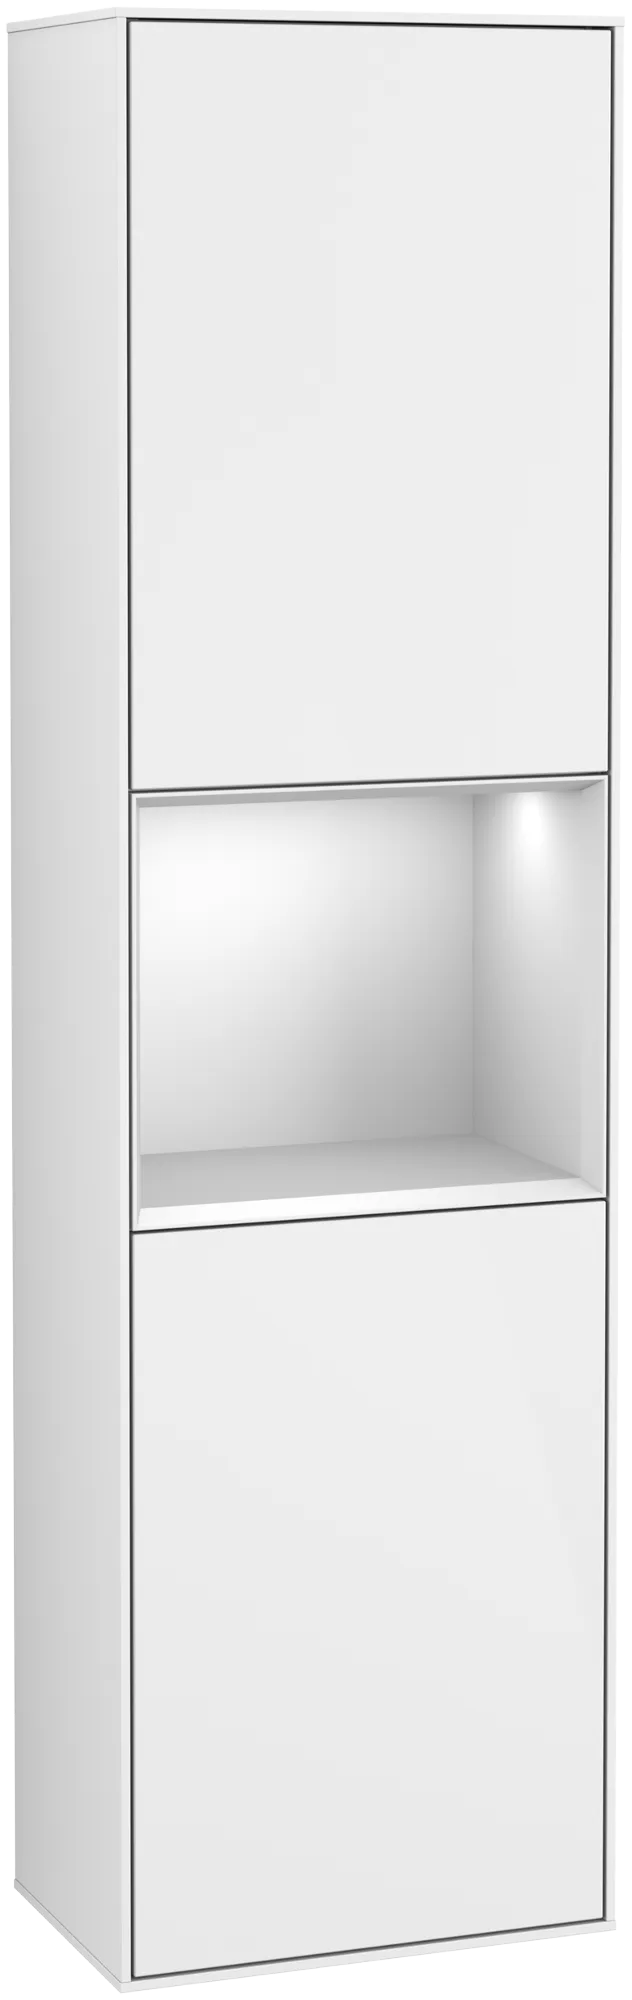 Bild von VILLEROY BOCH Finion Hochschrank, mit Beleuchtung, 2 Türen, 418 x 1516 x 270 mm, Glossy White Lacquer / White Matt Lacquer #G460MTGF